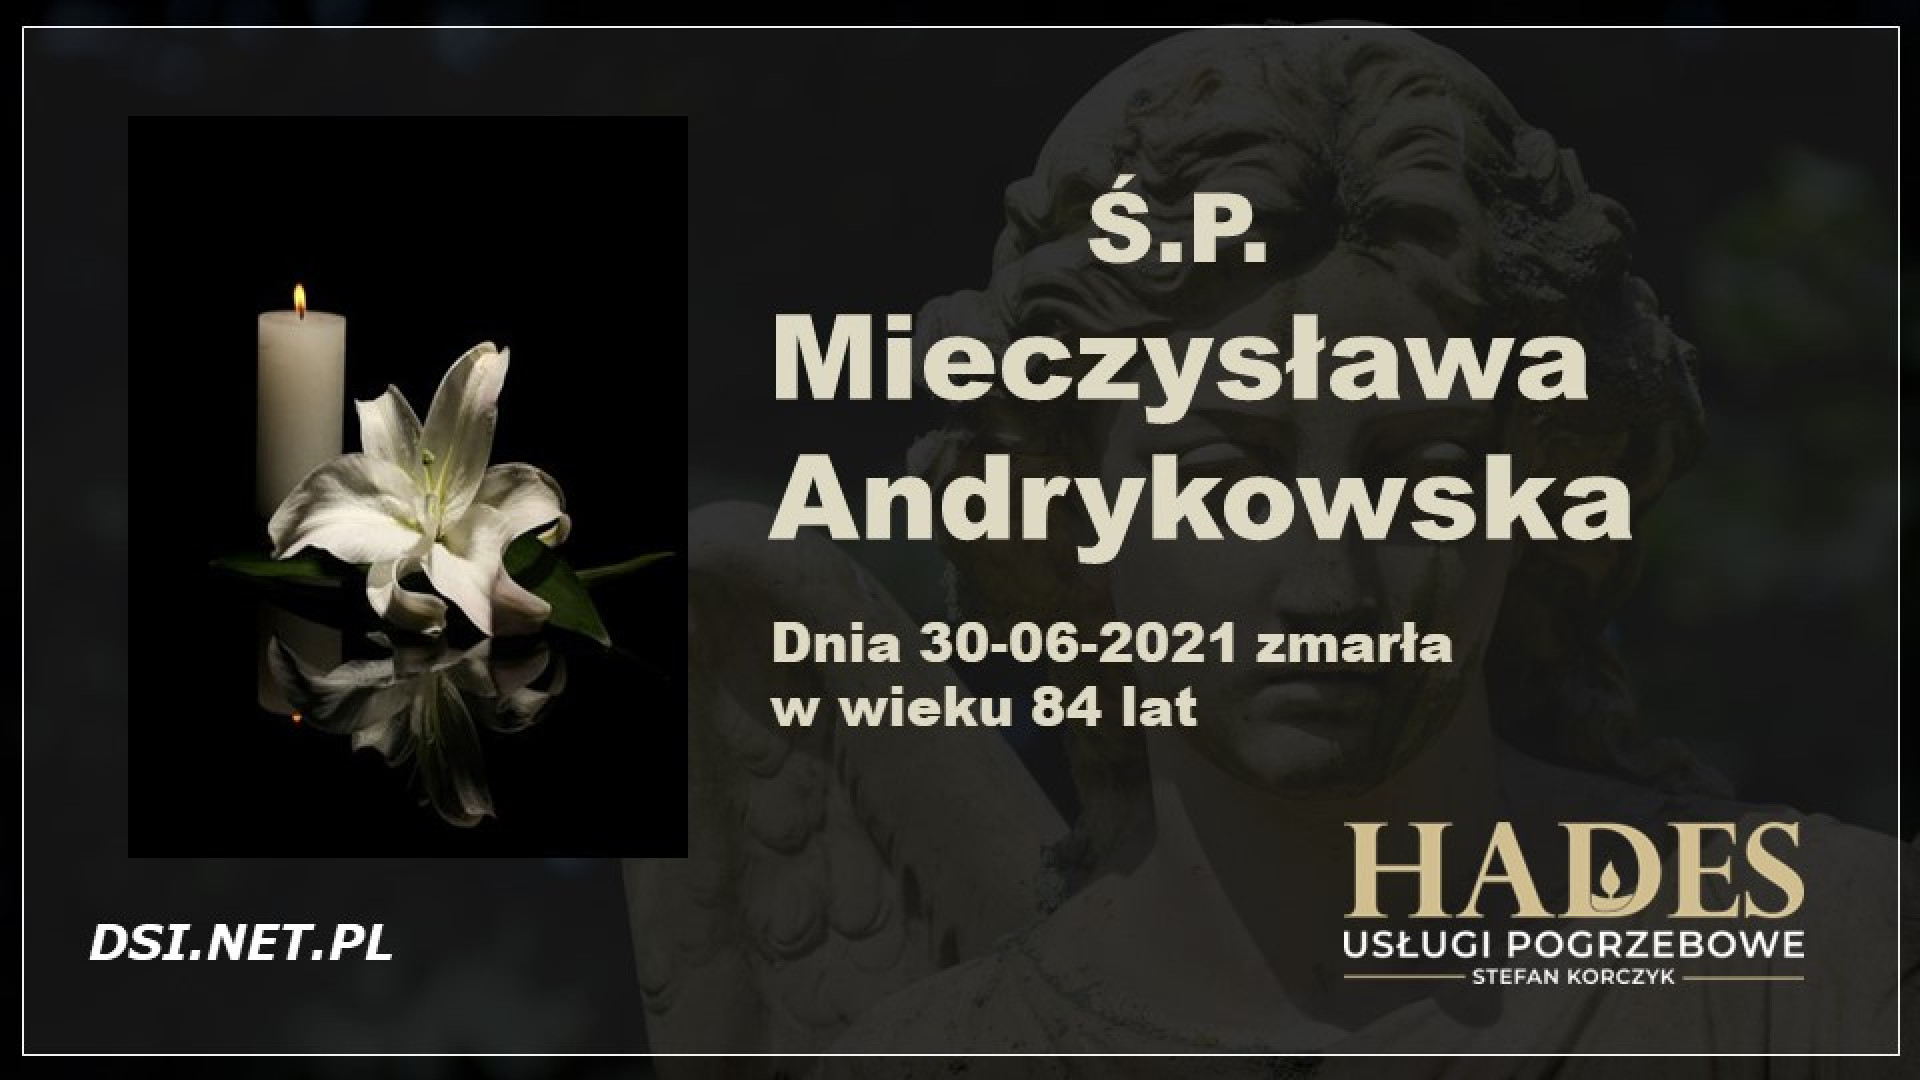 Ś.P. Mieczysława Andrykowska